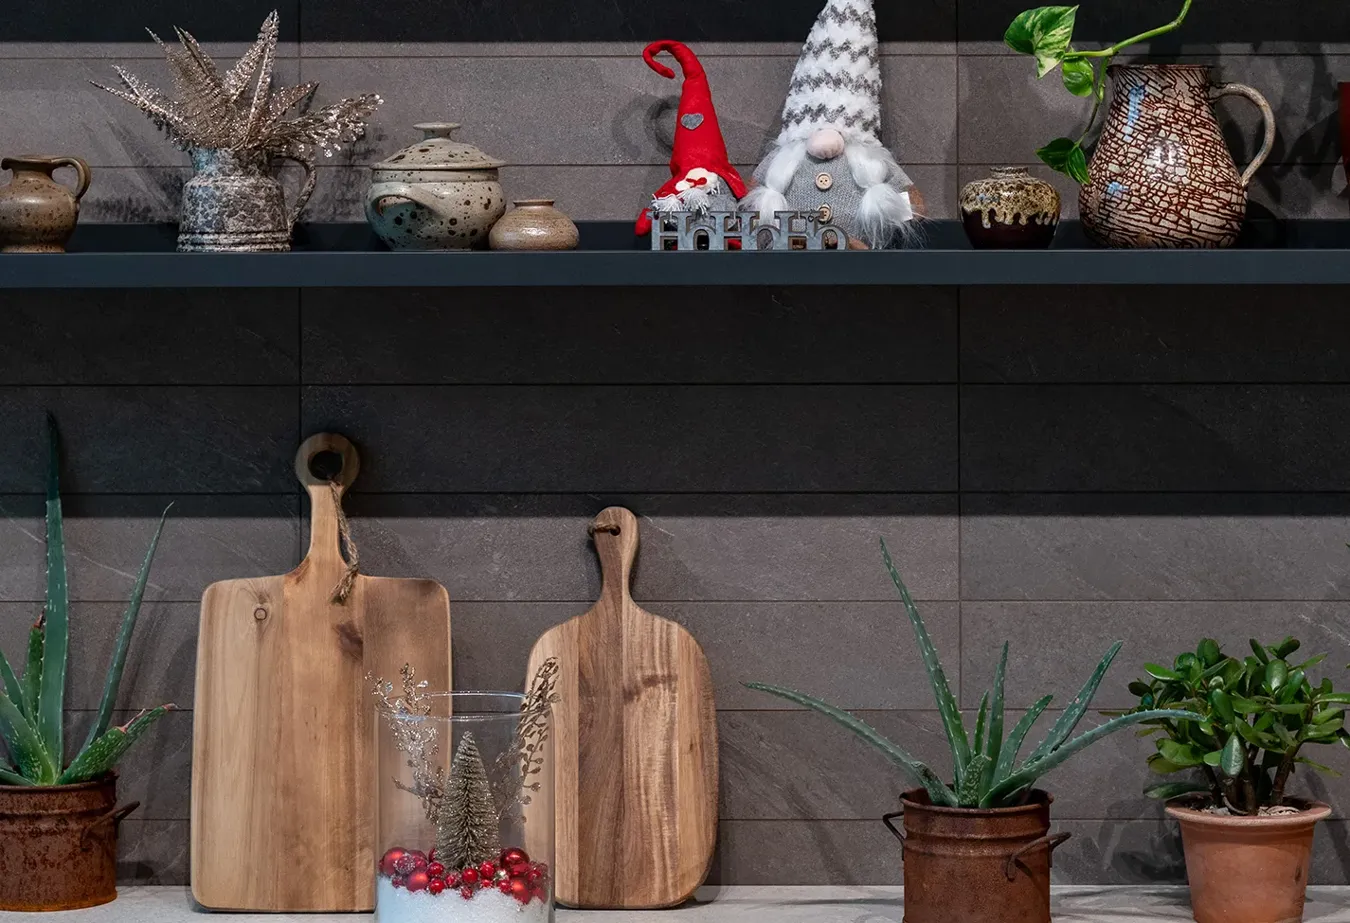 Cuisine chaleureuse avec carrelage Brystone, décorations de Noël traditionnelles et accessoires en bois naturel.